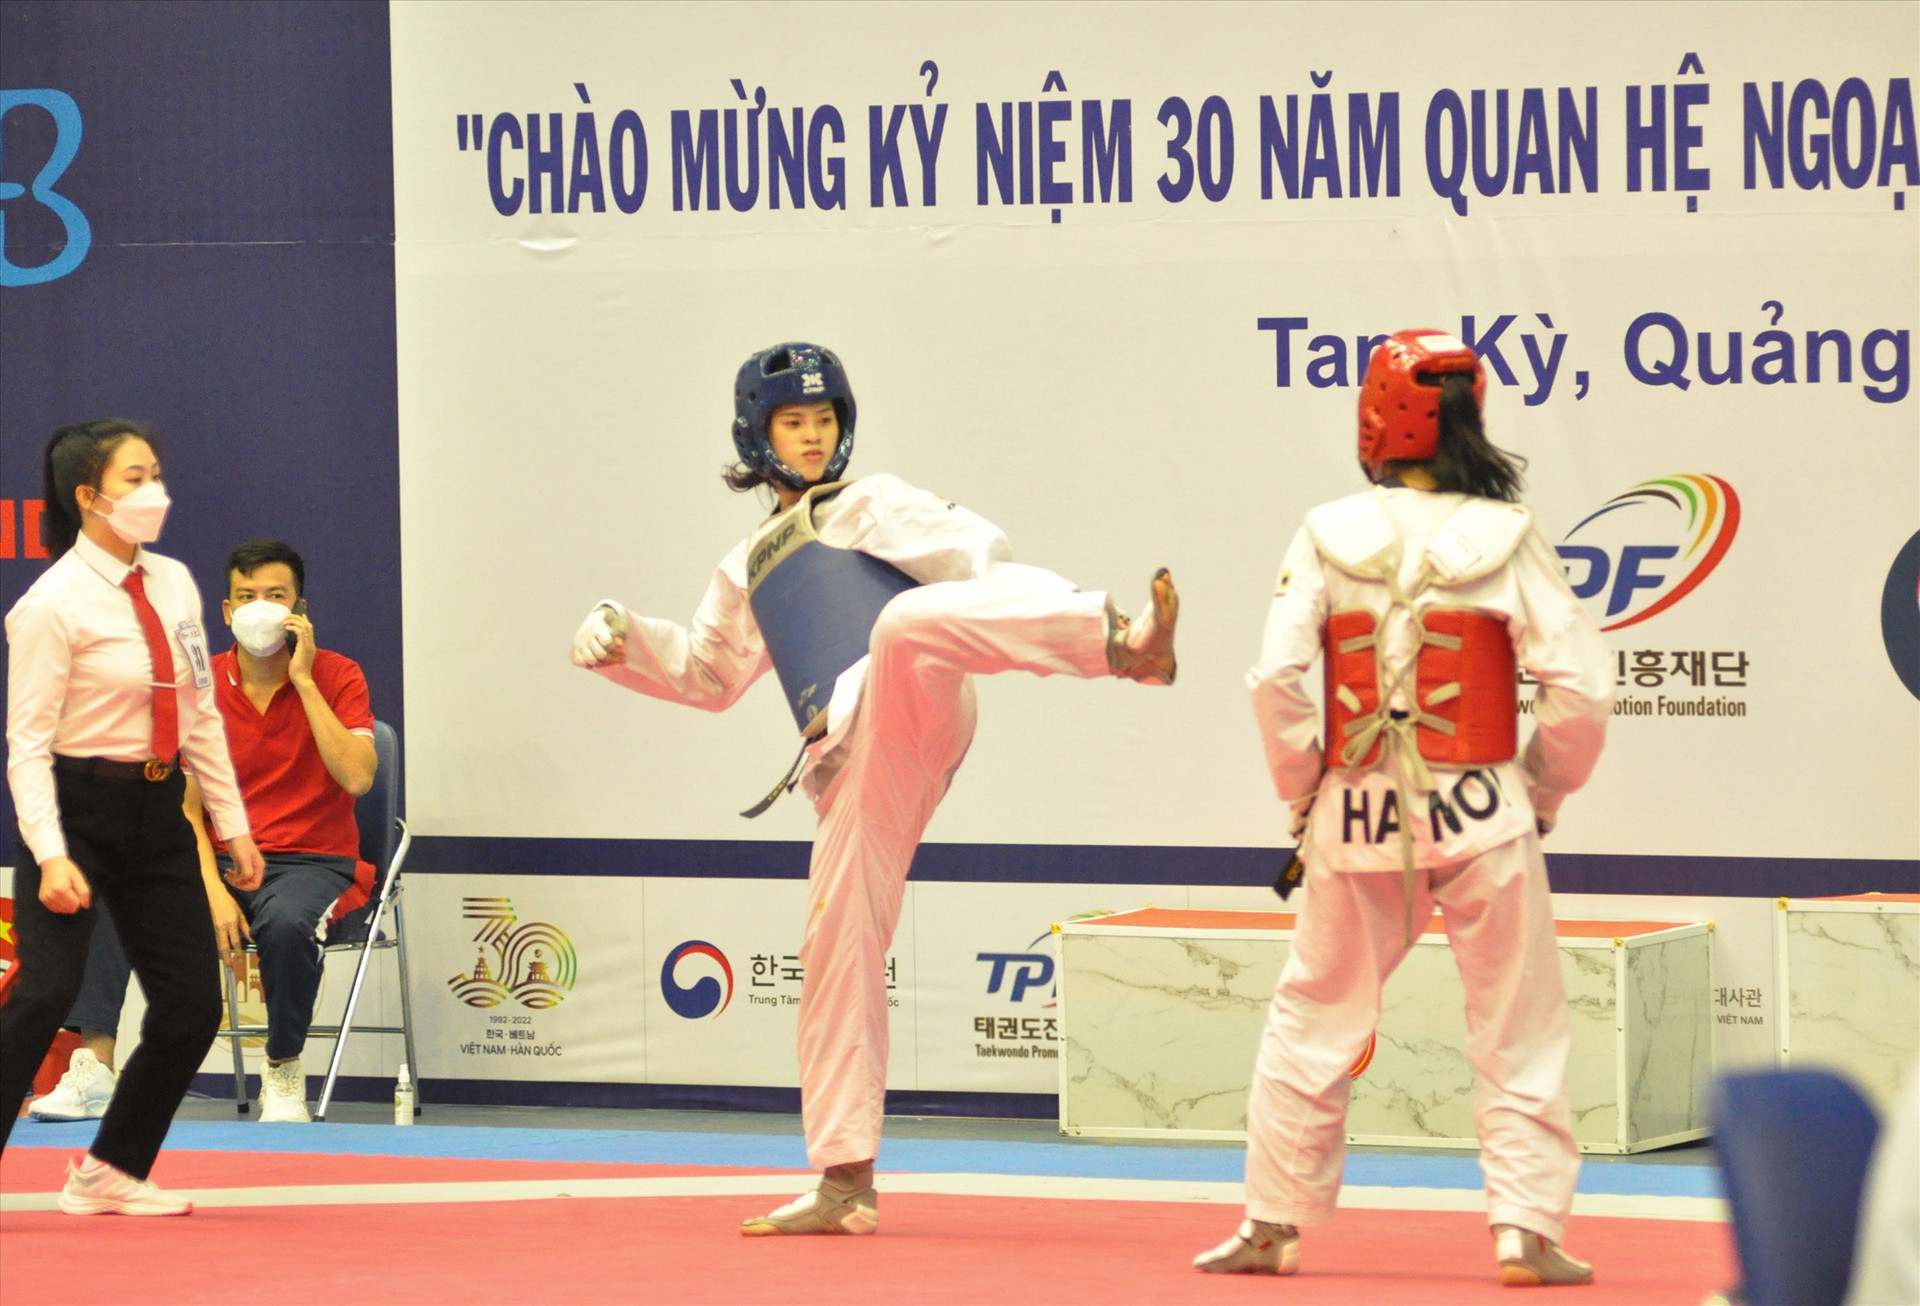 VĐV Trần Thị Mỹ Khanh (bên trái) là một trong những cá nhân tiêu biểu đóng góp nhiều thành tích cho thể thao Quảng Nam. Ảnh: A.S